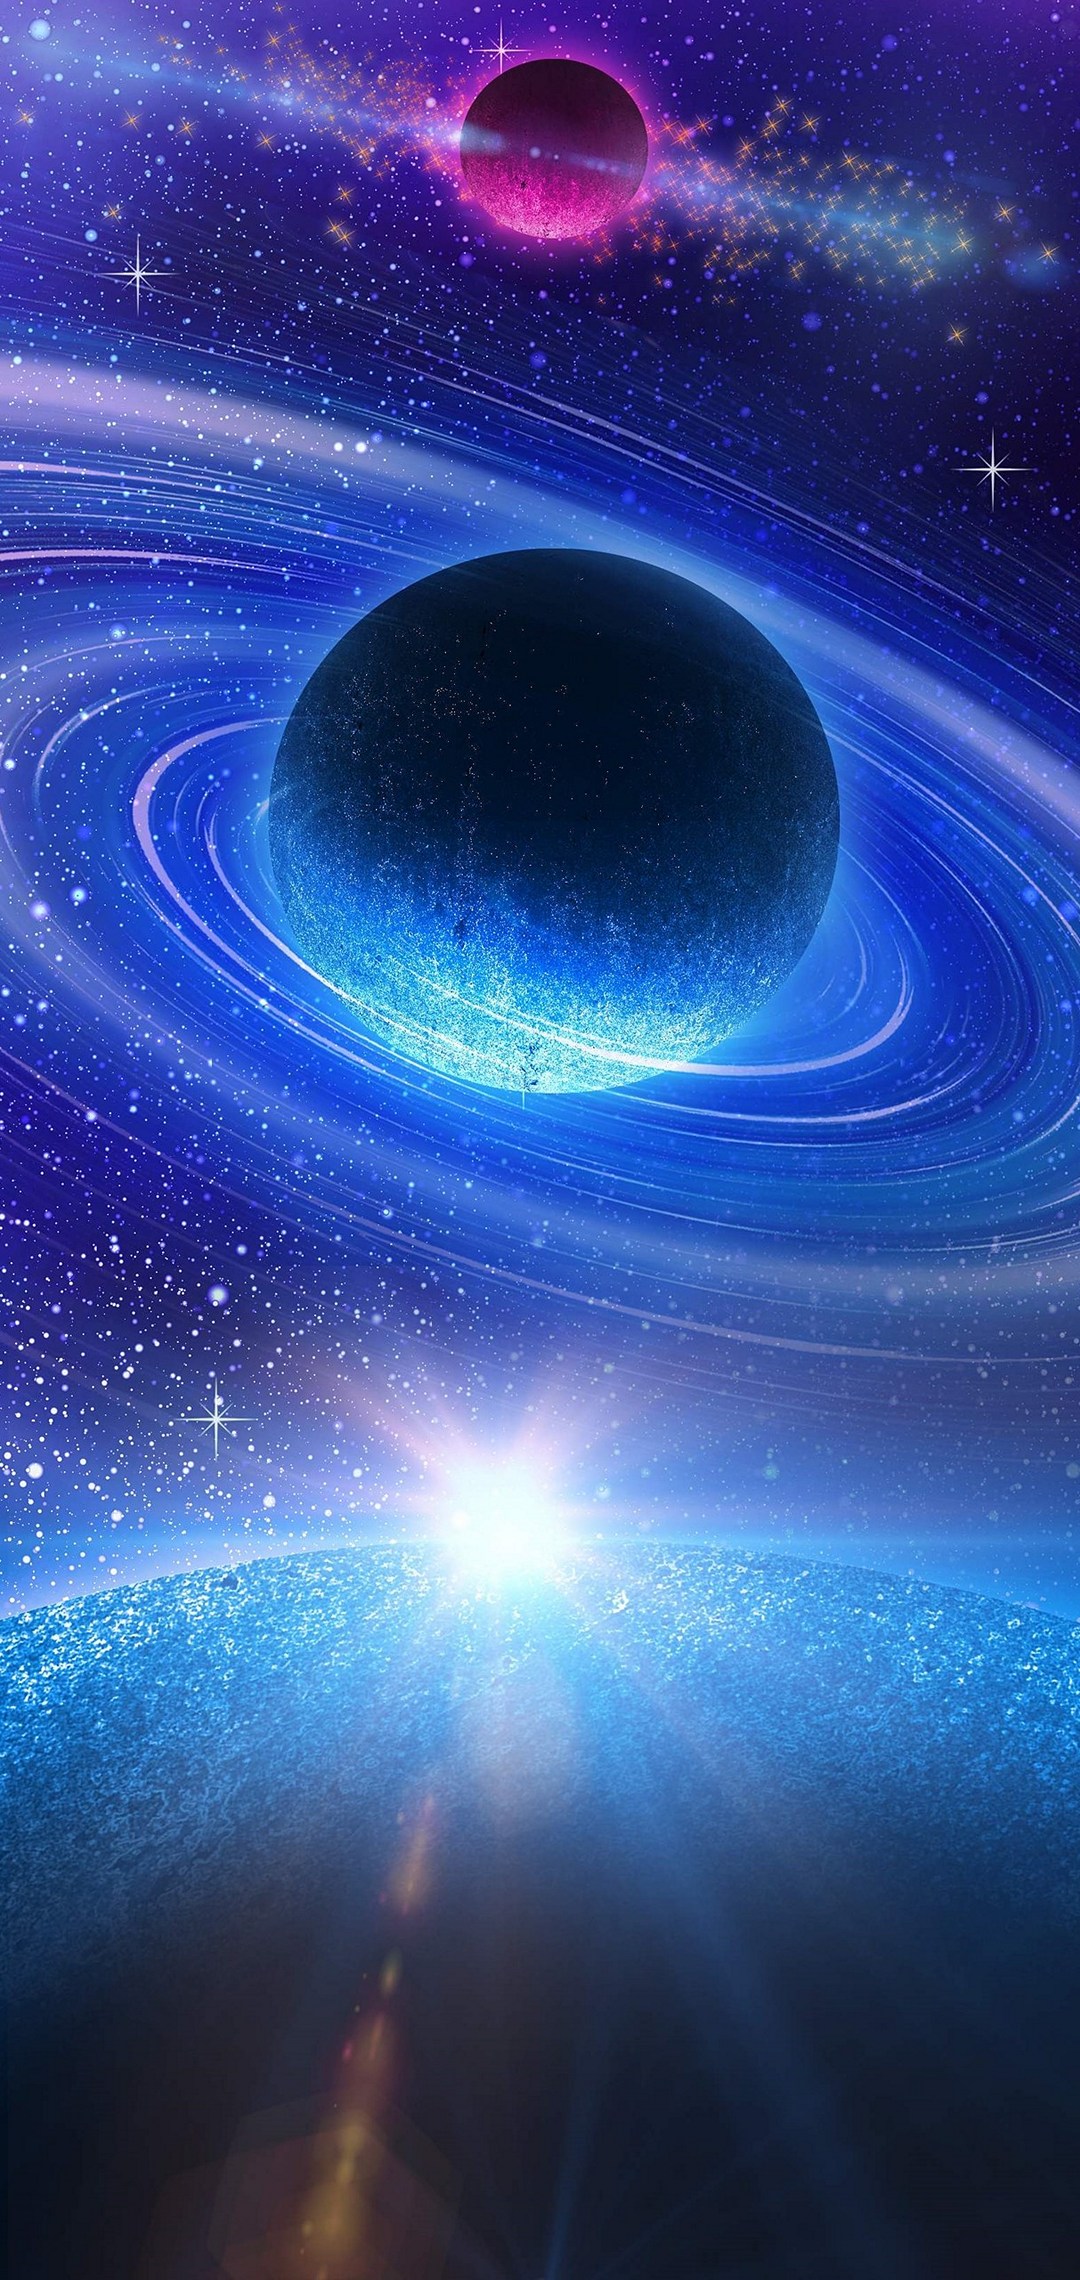 青い惑星と紫の惑星 綺麗な宇宙 Aquos Sense4 Lite Androidスマホ壁紙 待ち受け スマラン